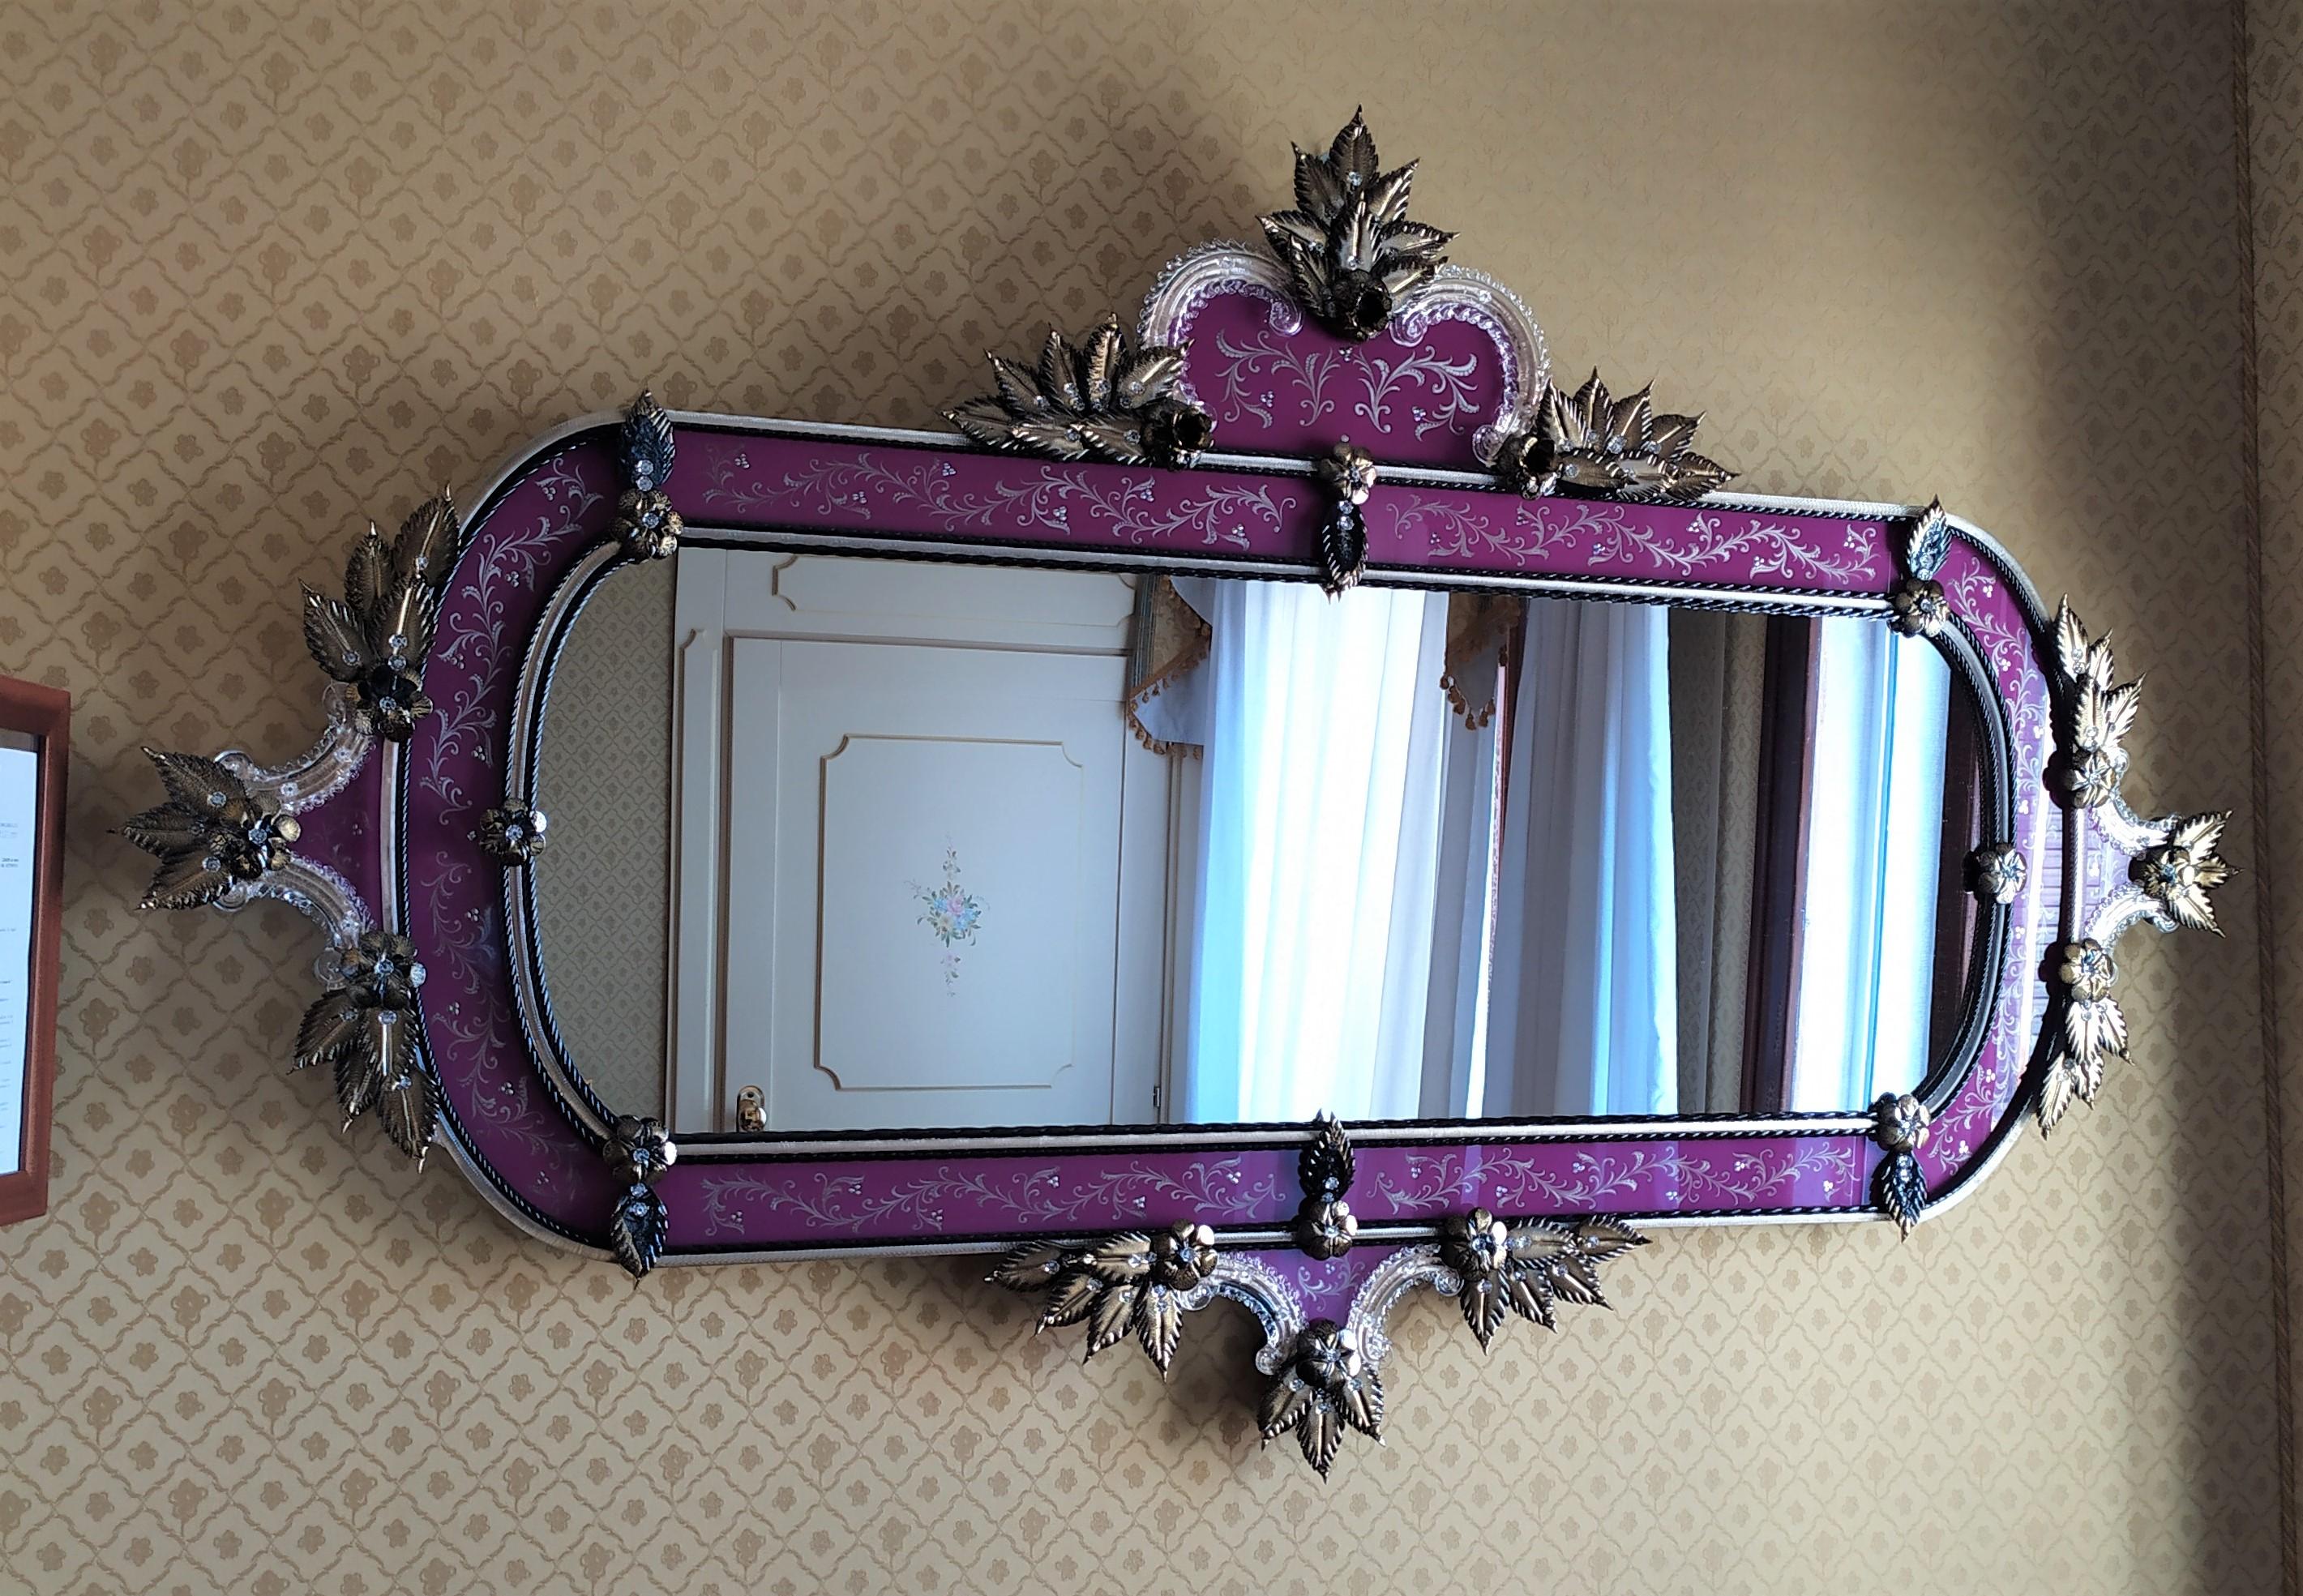 Miroir horizontal de style vénitien, revisité en couleurs.
Miroir en verre de Murano, avec cadre gravé à la main réalisé selon les anciennes traditions muranaises, de couleur violette, avec des roseaux, des feuilles et des fleurs de couleur or